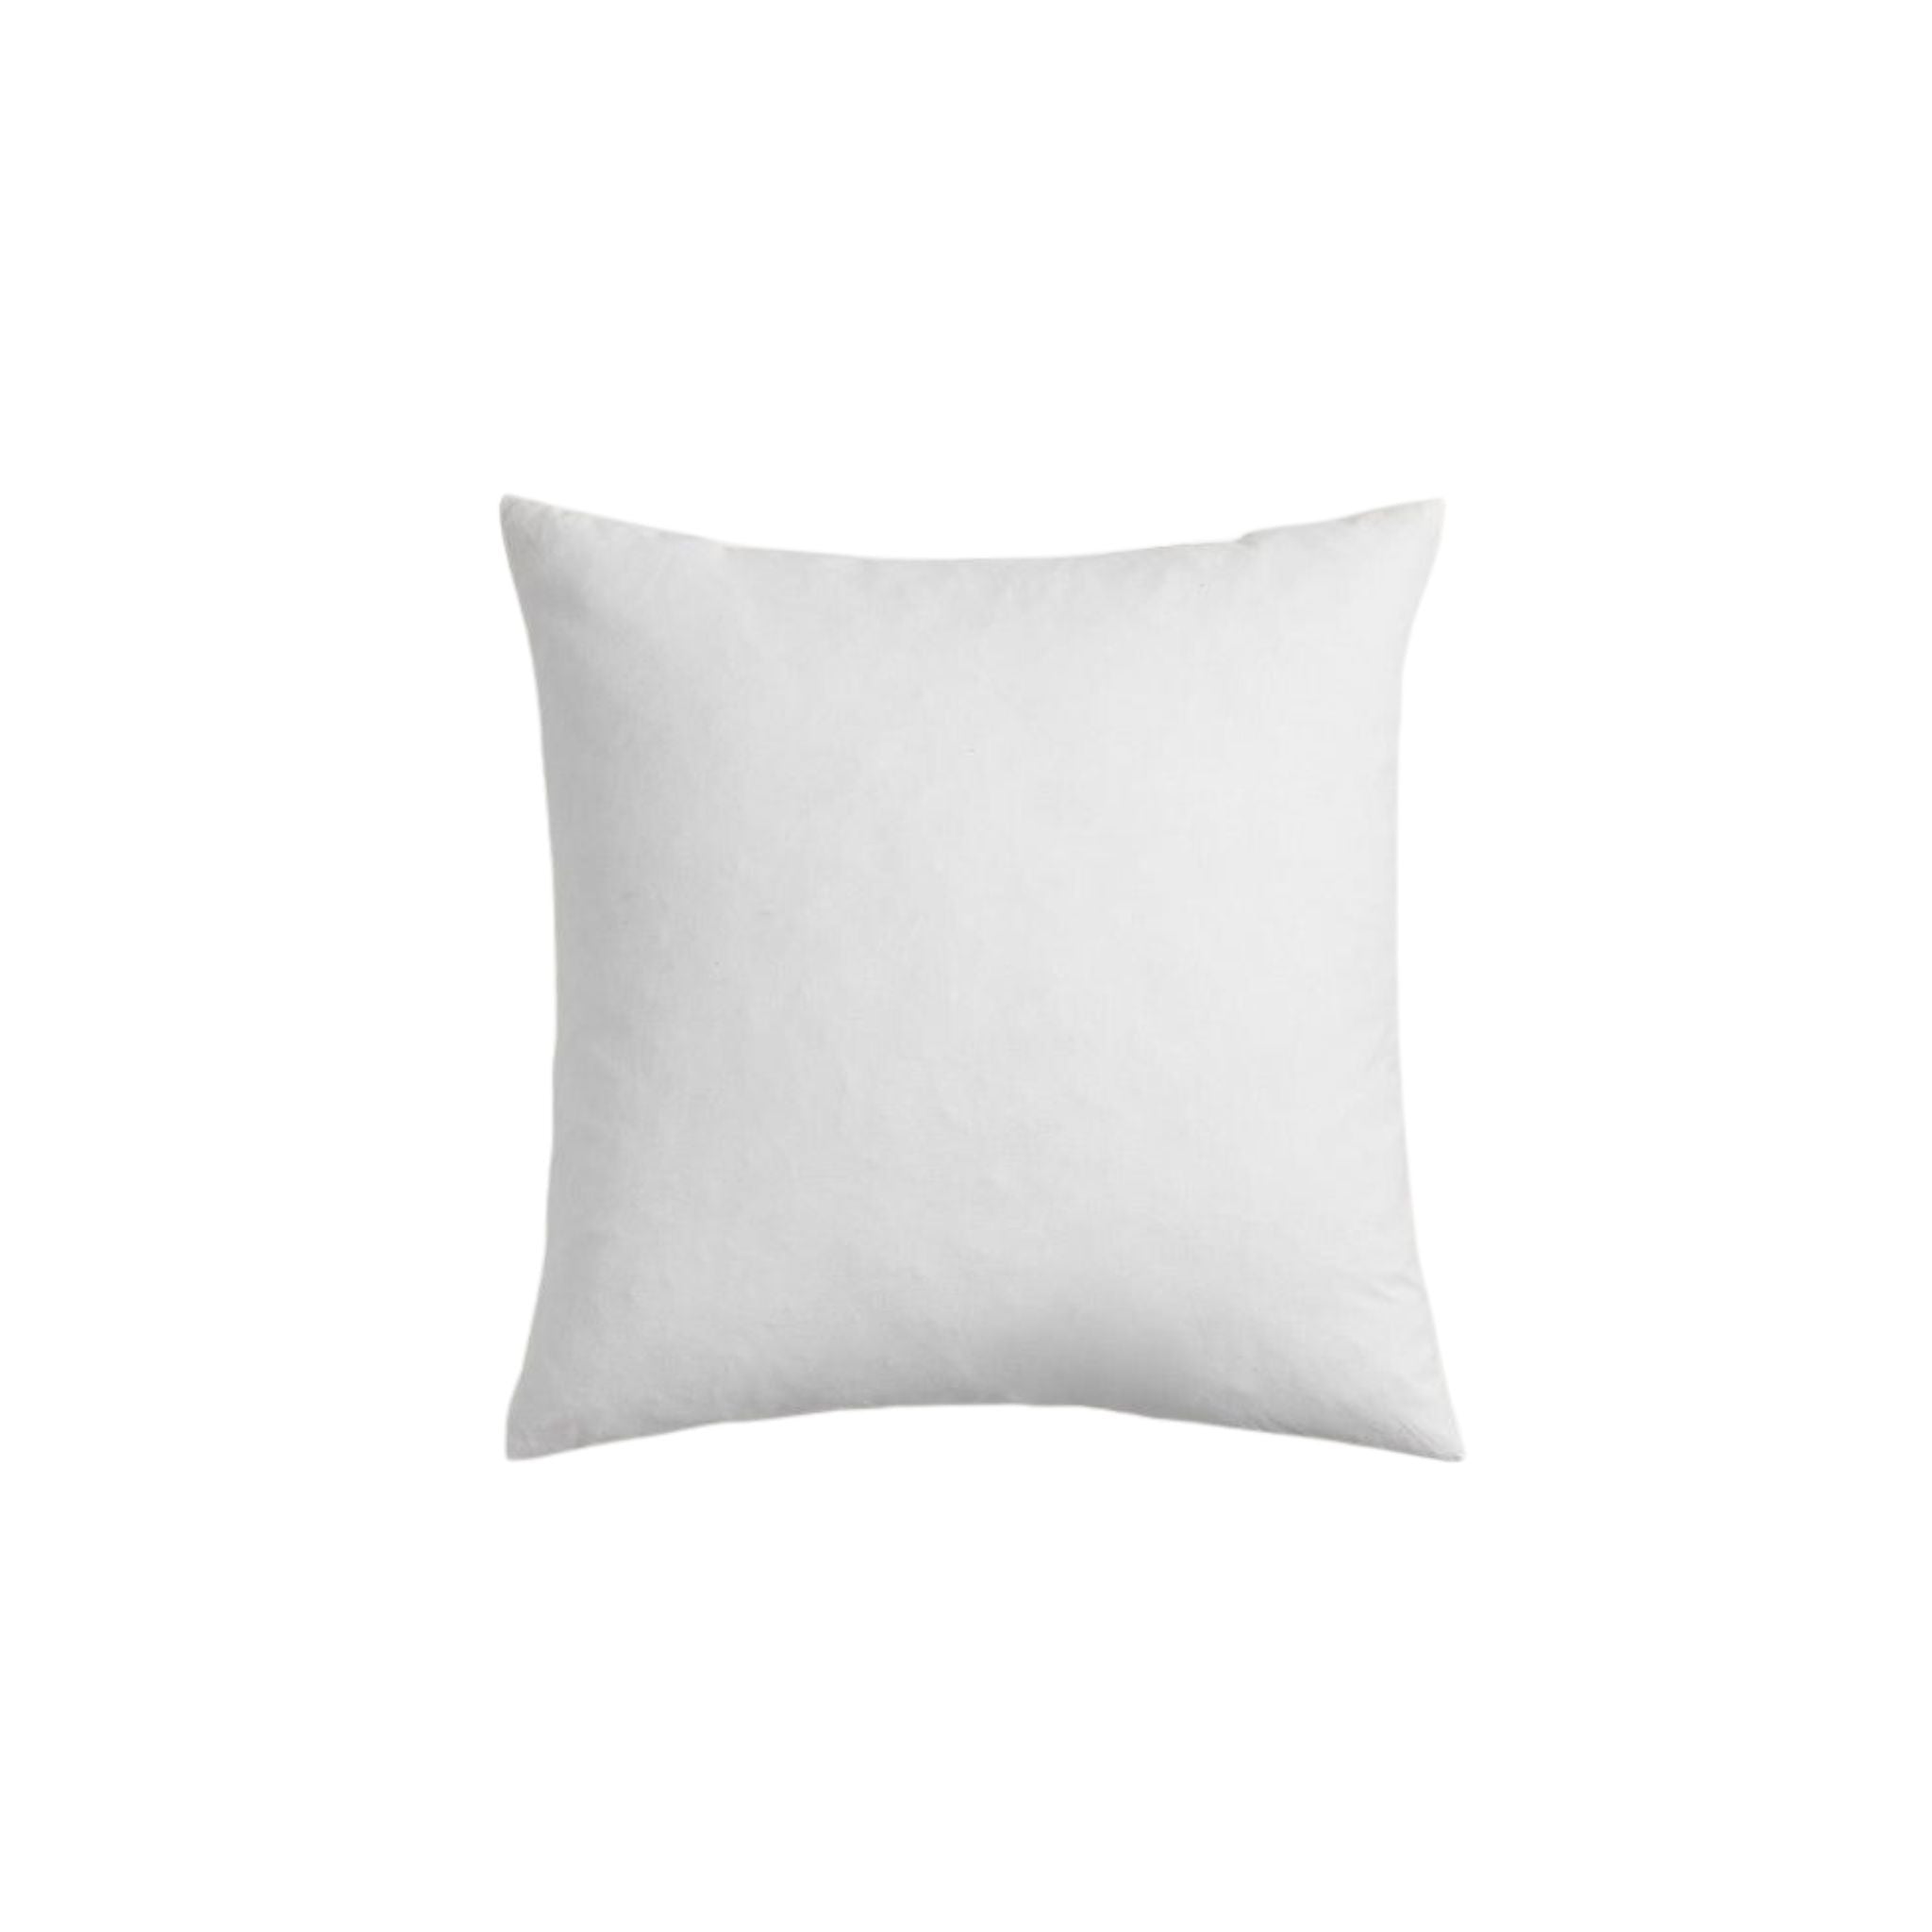 Pillow Insert 22x22